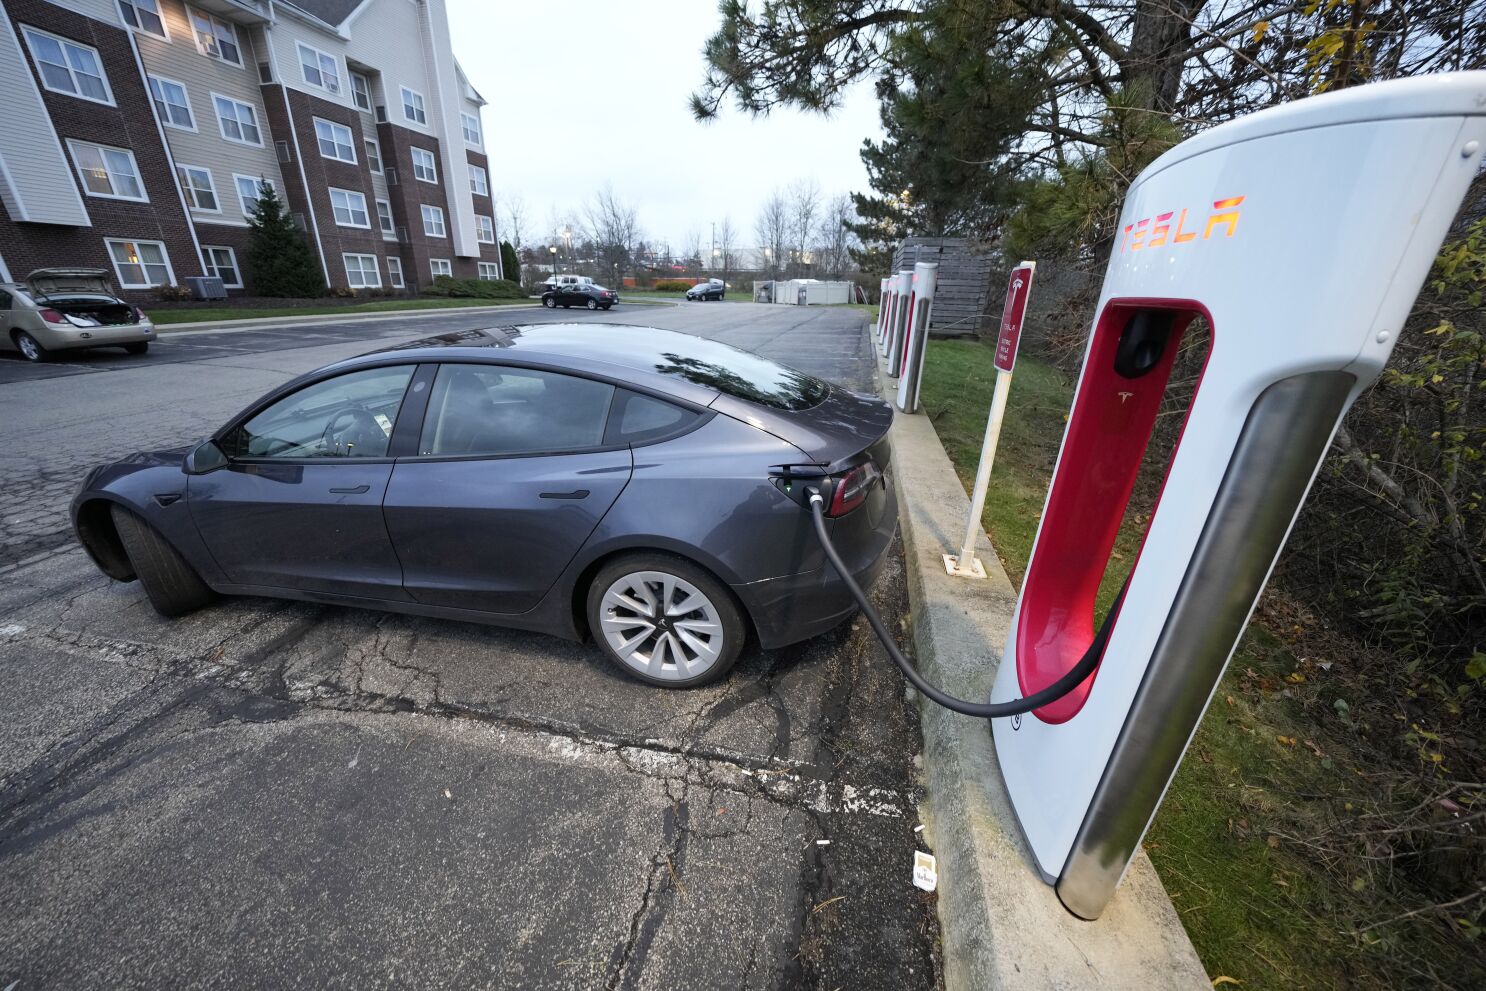 Laat je zien bonen Vergevingsgezind Tesla baja el precio de vehículos para impulsar demanda - Los Angeles Times